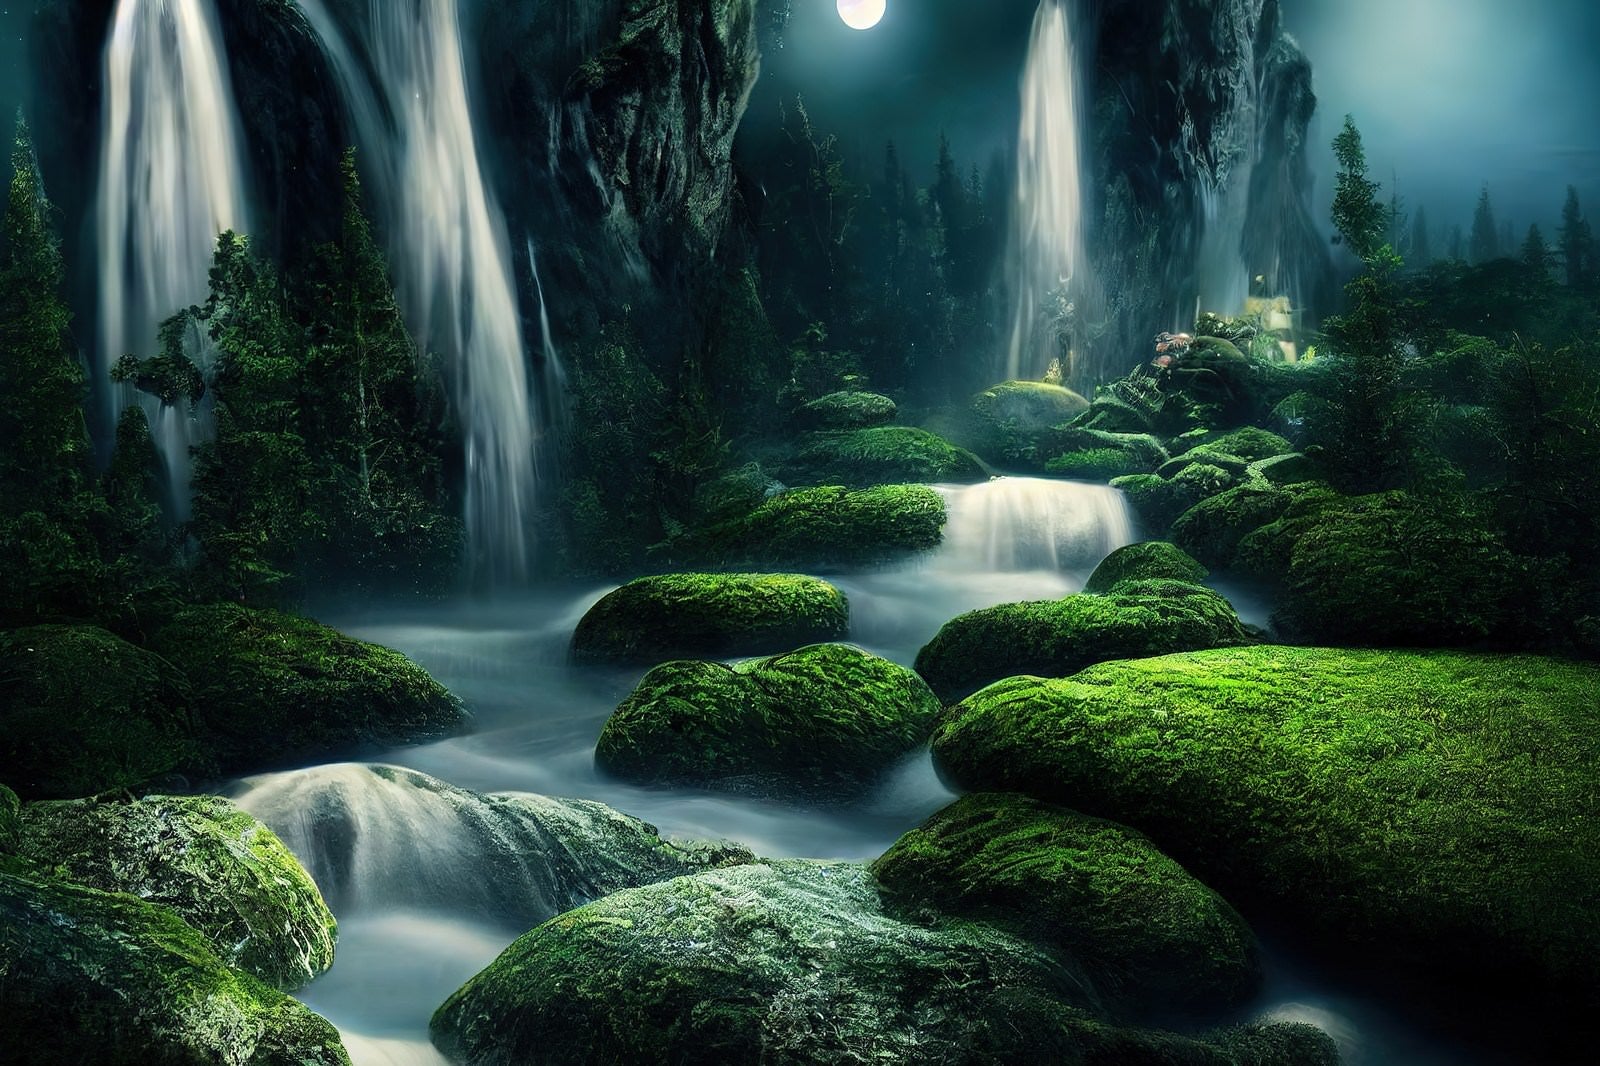 「夜の渓流と苔生す岩肌」の写真